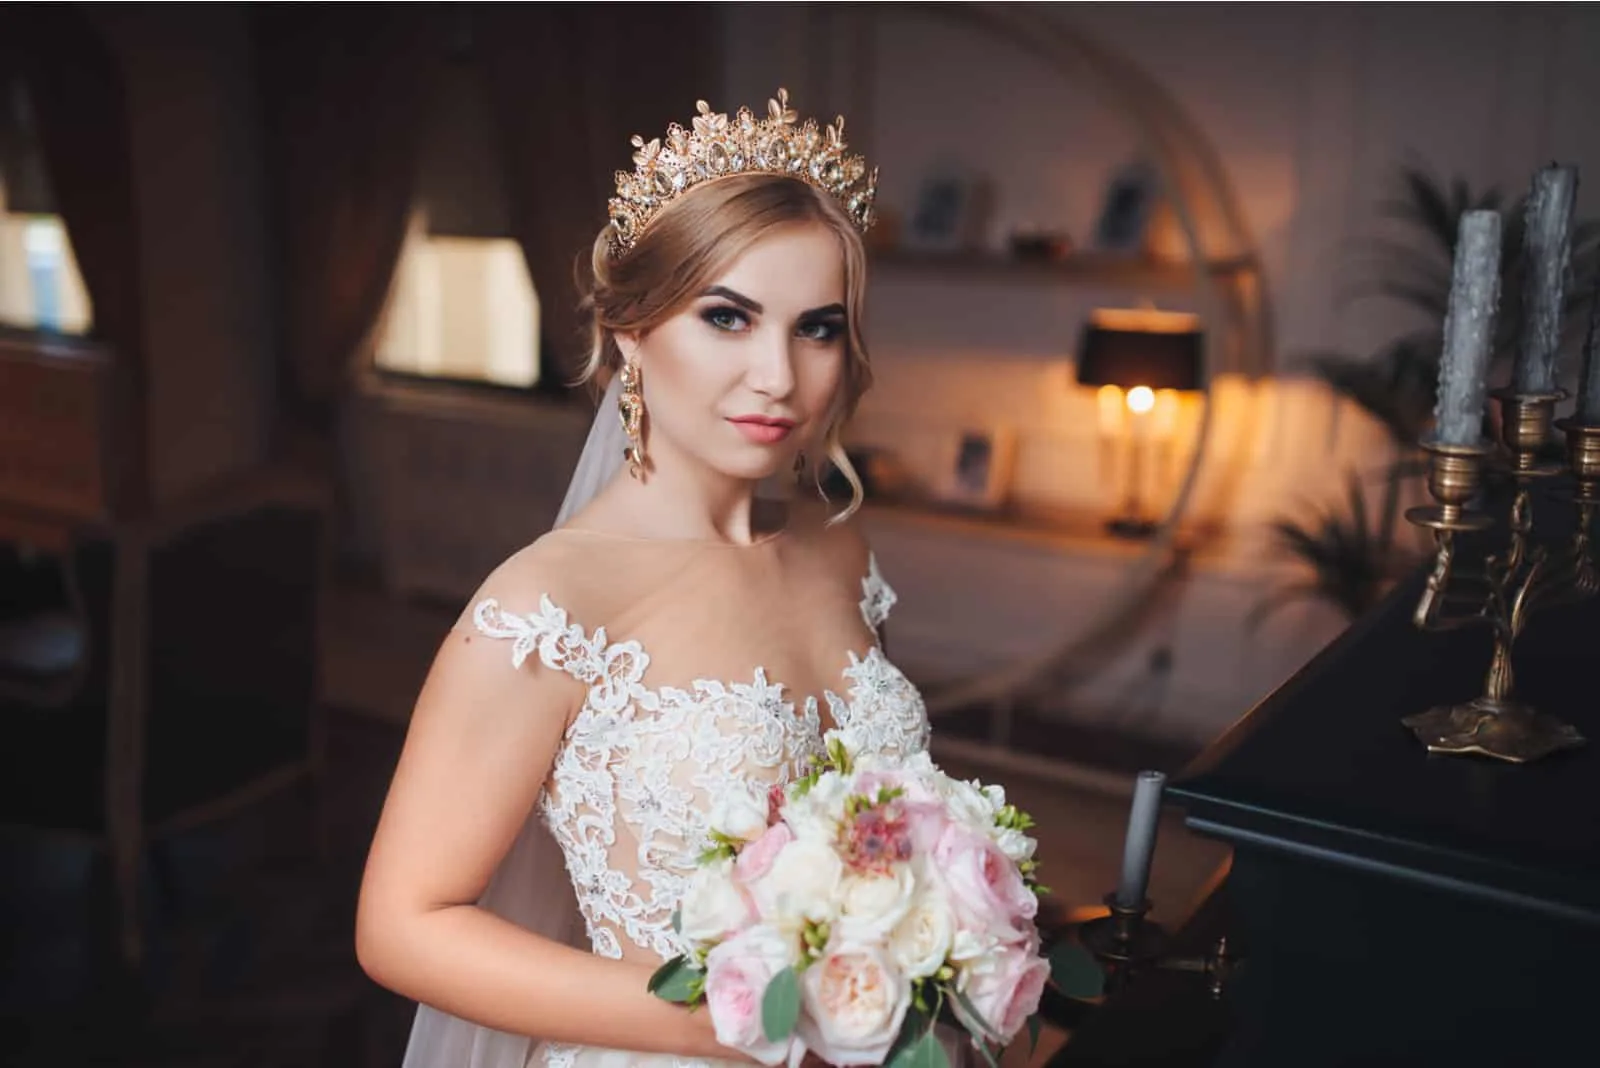 Eine blonde Braut mit einer Krone oder einem Diadem auf dem Kopf schaut in die Kamera